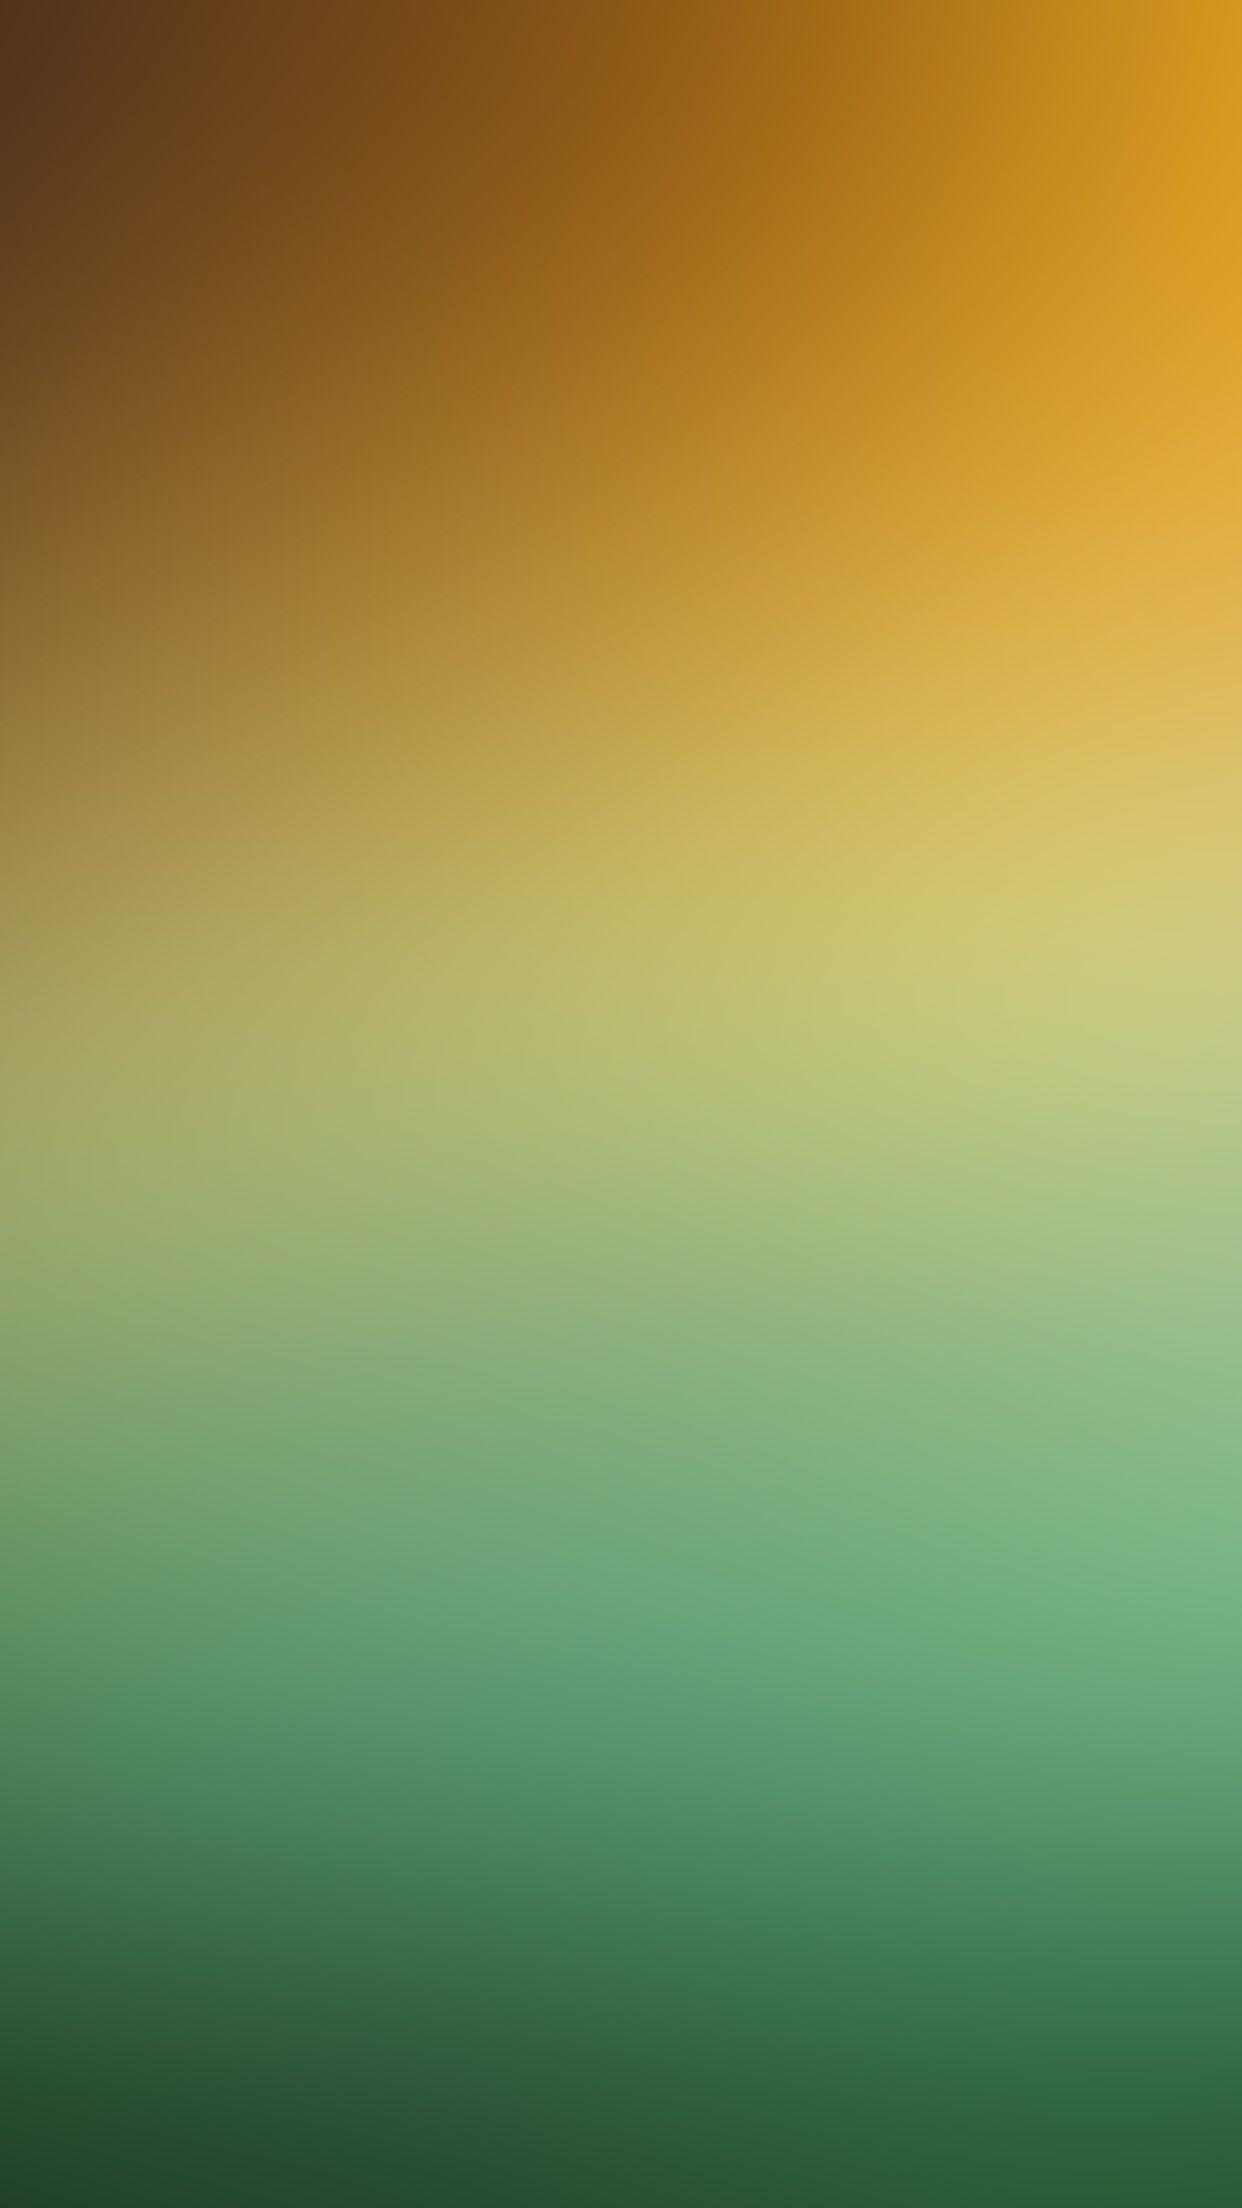 iPhone 6 Wallpaper green soft gradation blur